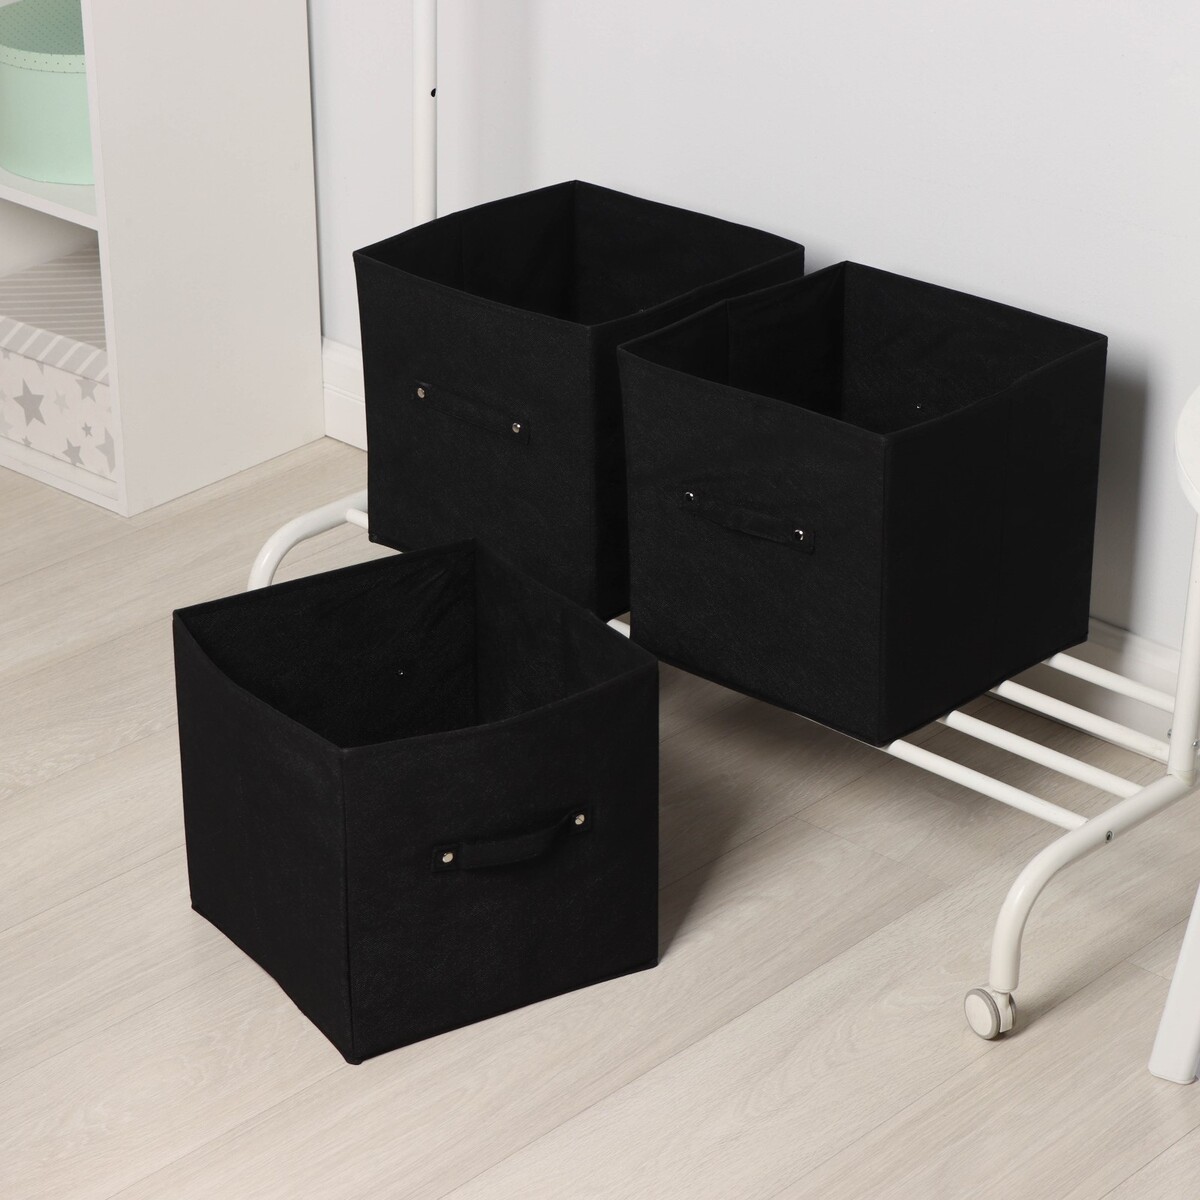 Короба для хранения вещей складные, без крышек, набор из 3 шт, 31×31×31 см, цвет черный набор держателей для крышек 4 шт joseph joseph cupboardstore